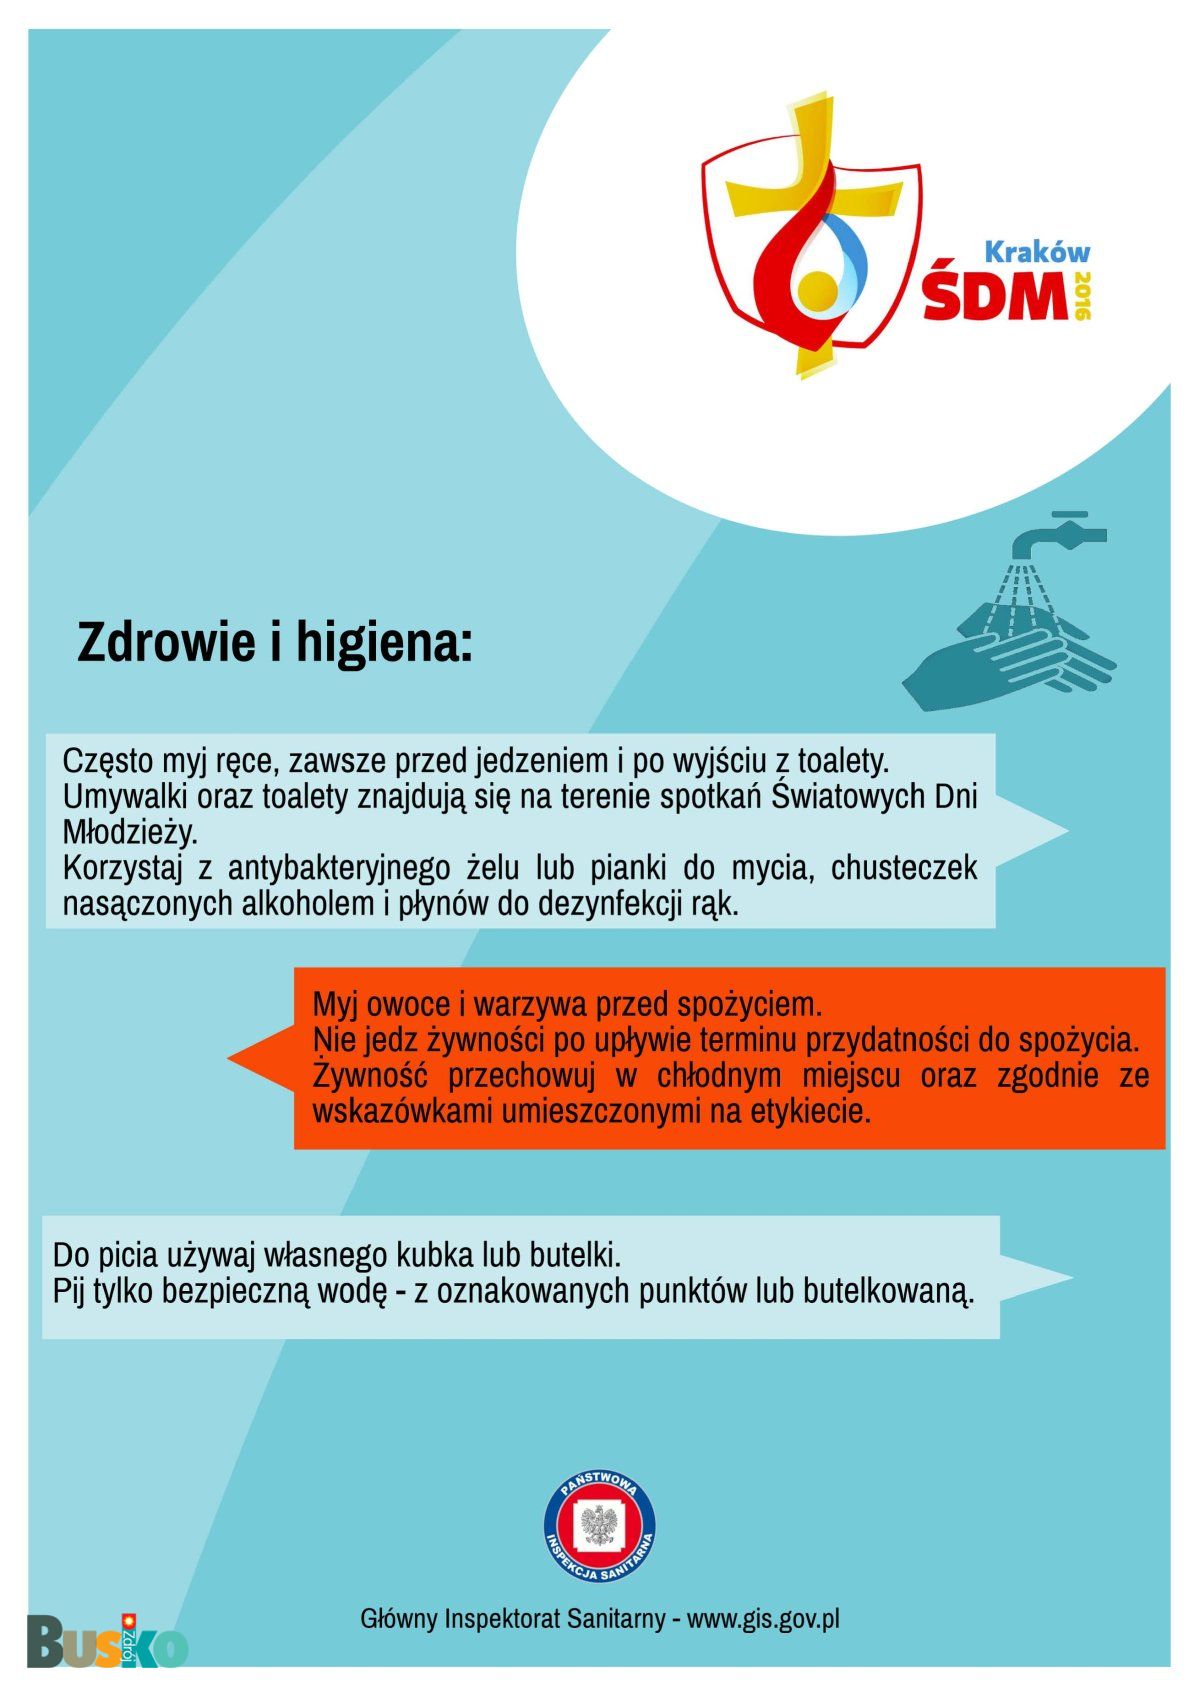 sdm_info2